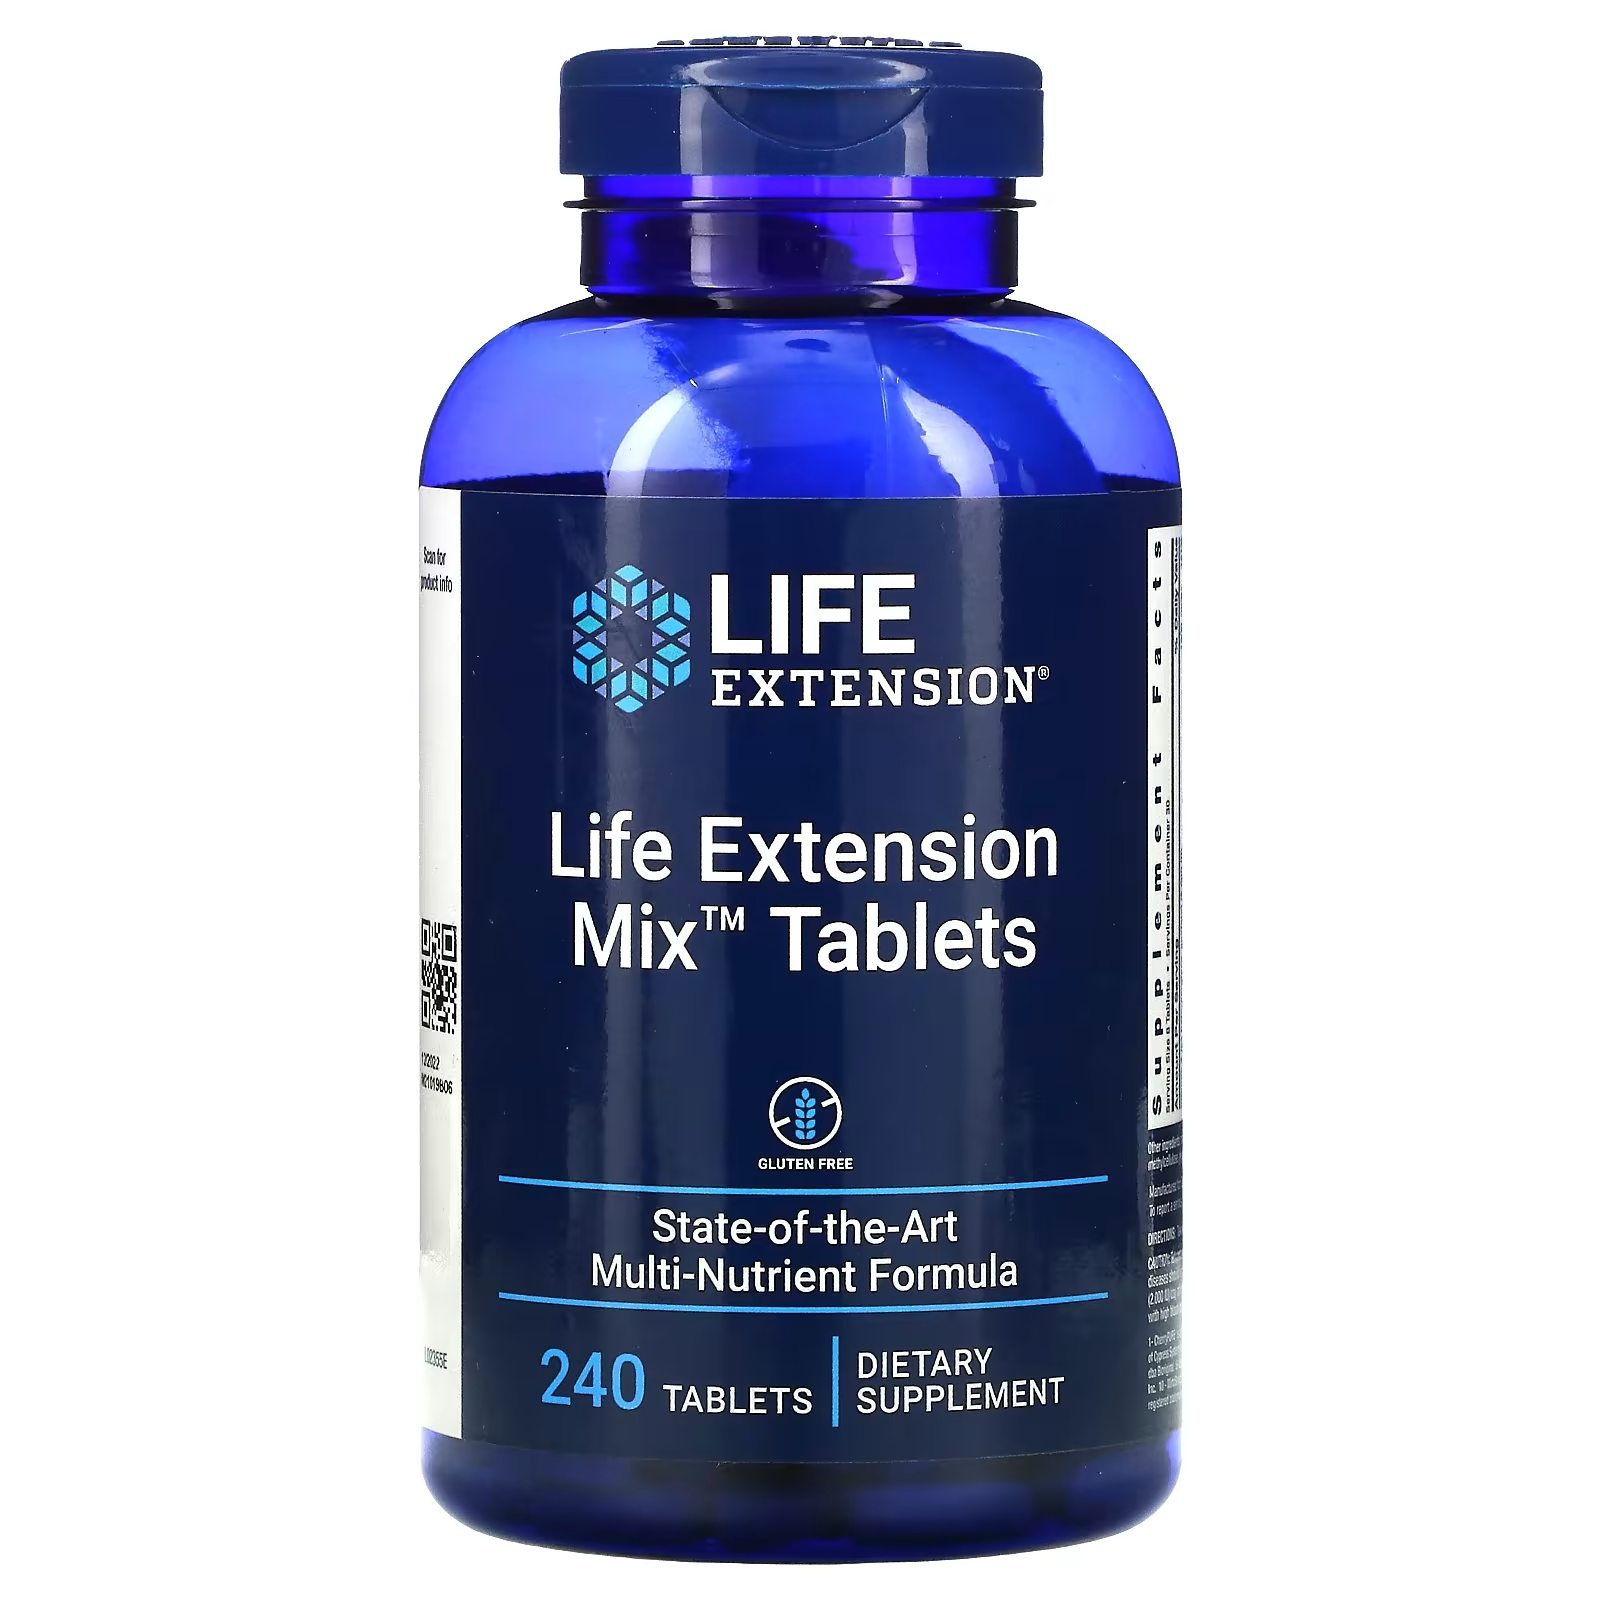 life extension таблетки life extension mix с дополнительным ниацином 240 таблеток Пищевая Добавка Life Extension Mix Tablets, 240 таблеток